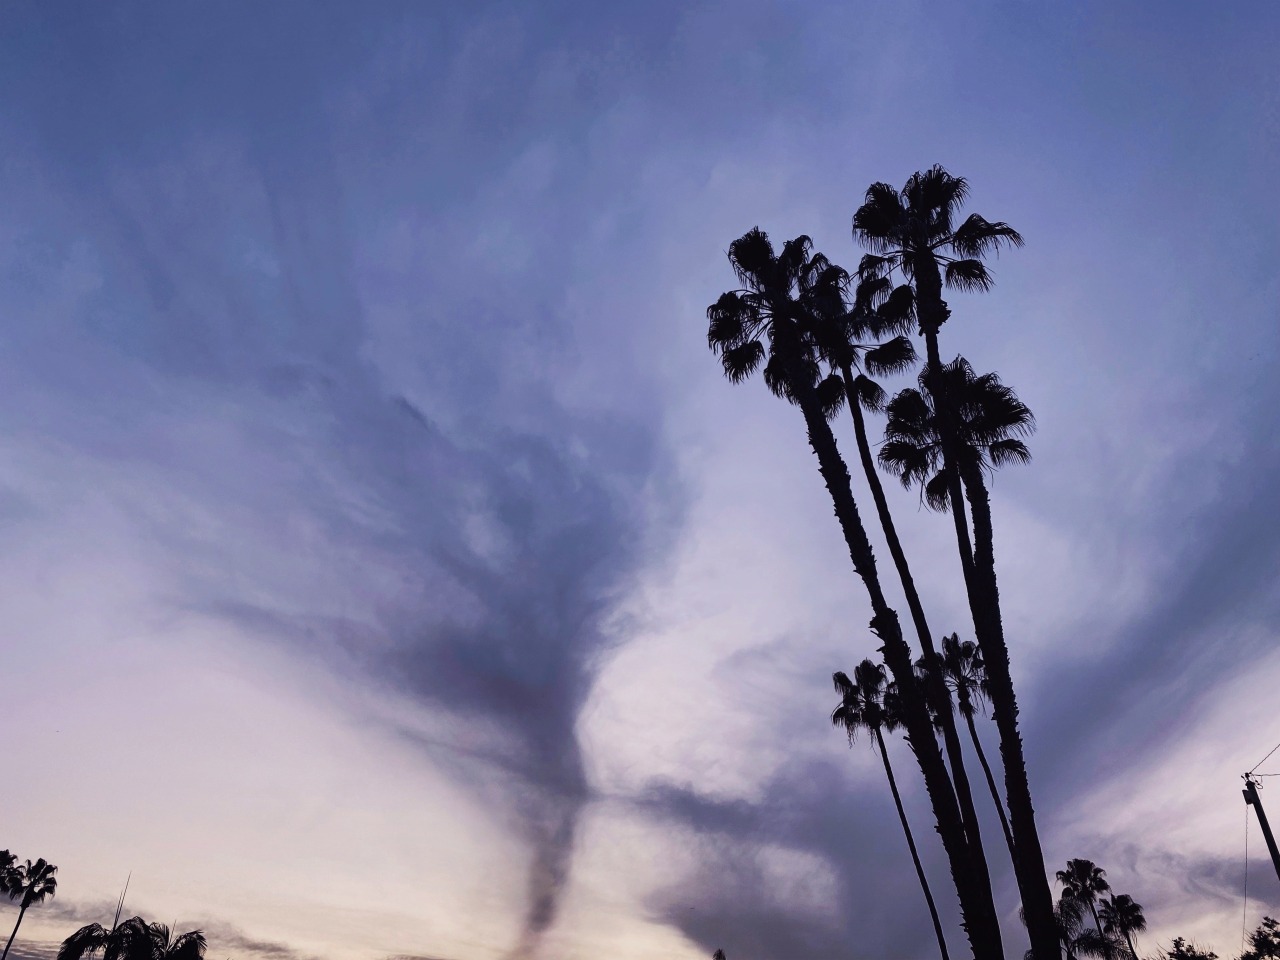 The cloud looked like a tornado. ∞ #upload#tornado#clouds#anaheim#palm trees#photography#sky#dusk